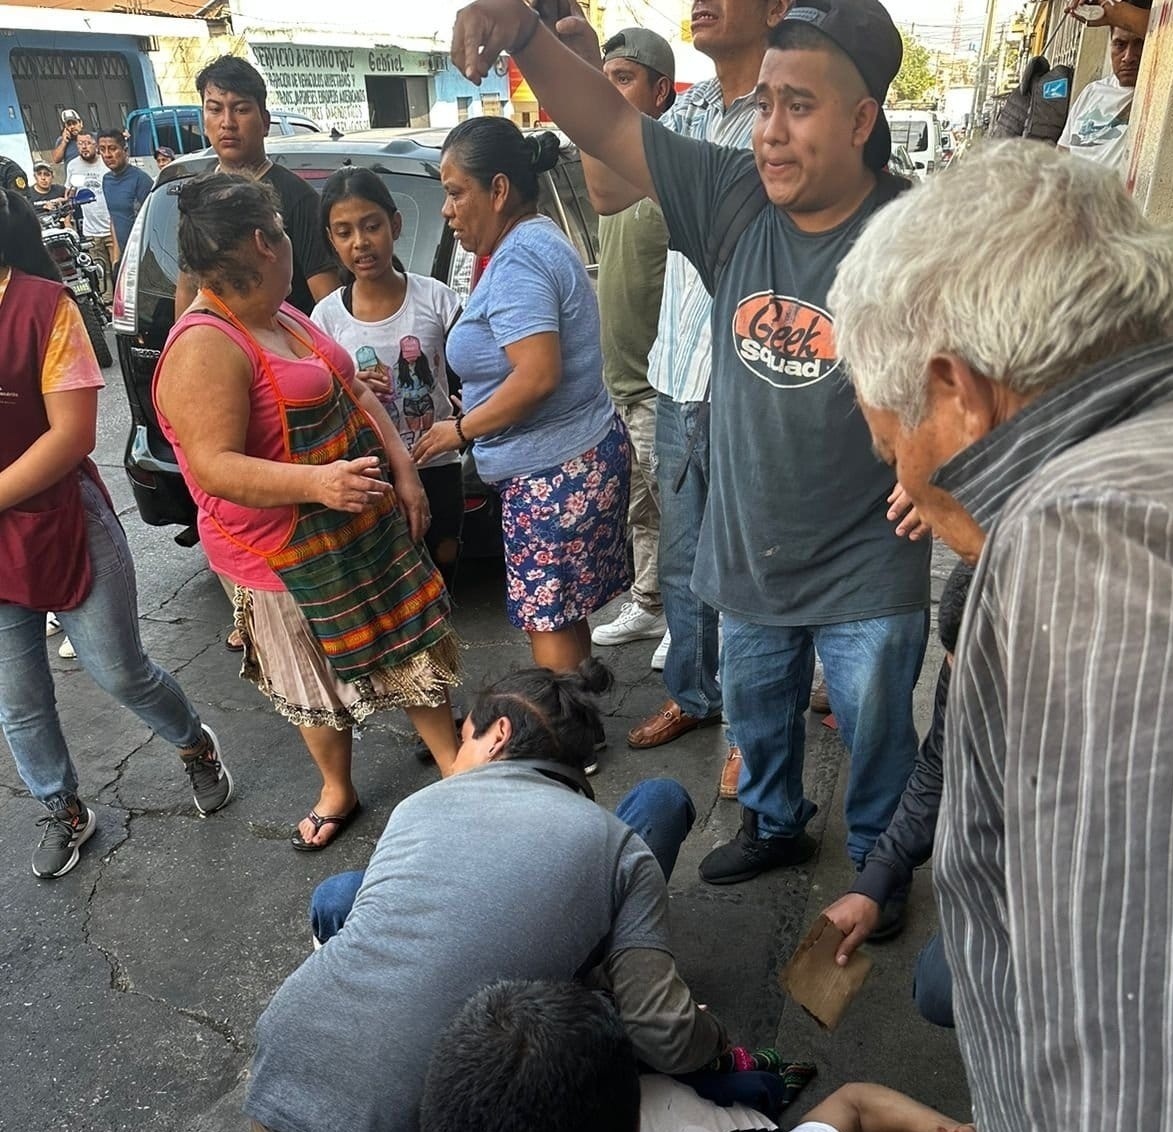 AHORA:

Balacera durante asalto a transporte de valores en colonia Quinta Samayoa.

Agente de PNC, trabajador del camión y 2 particulares alcanzados por los disparos.